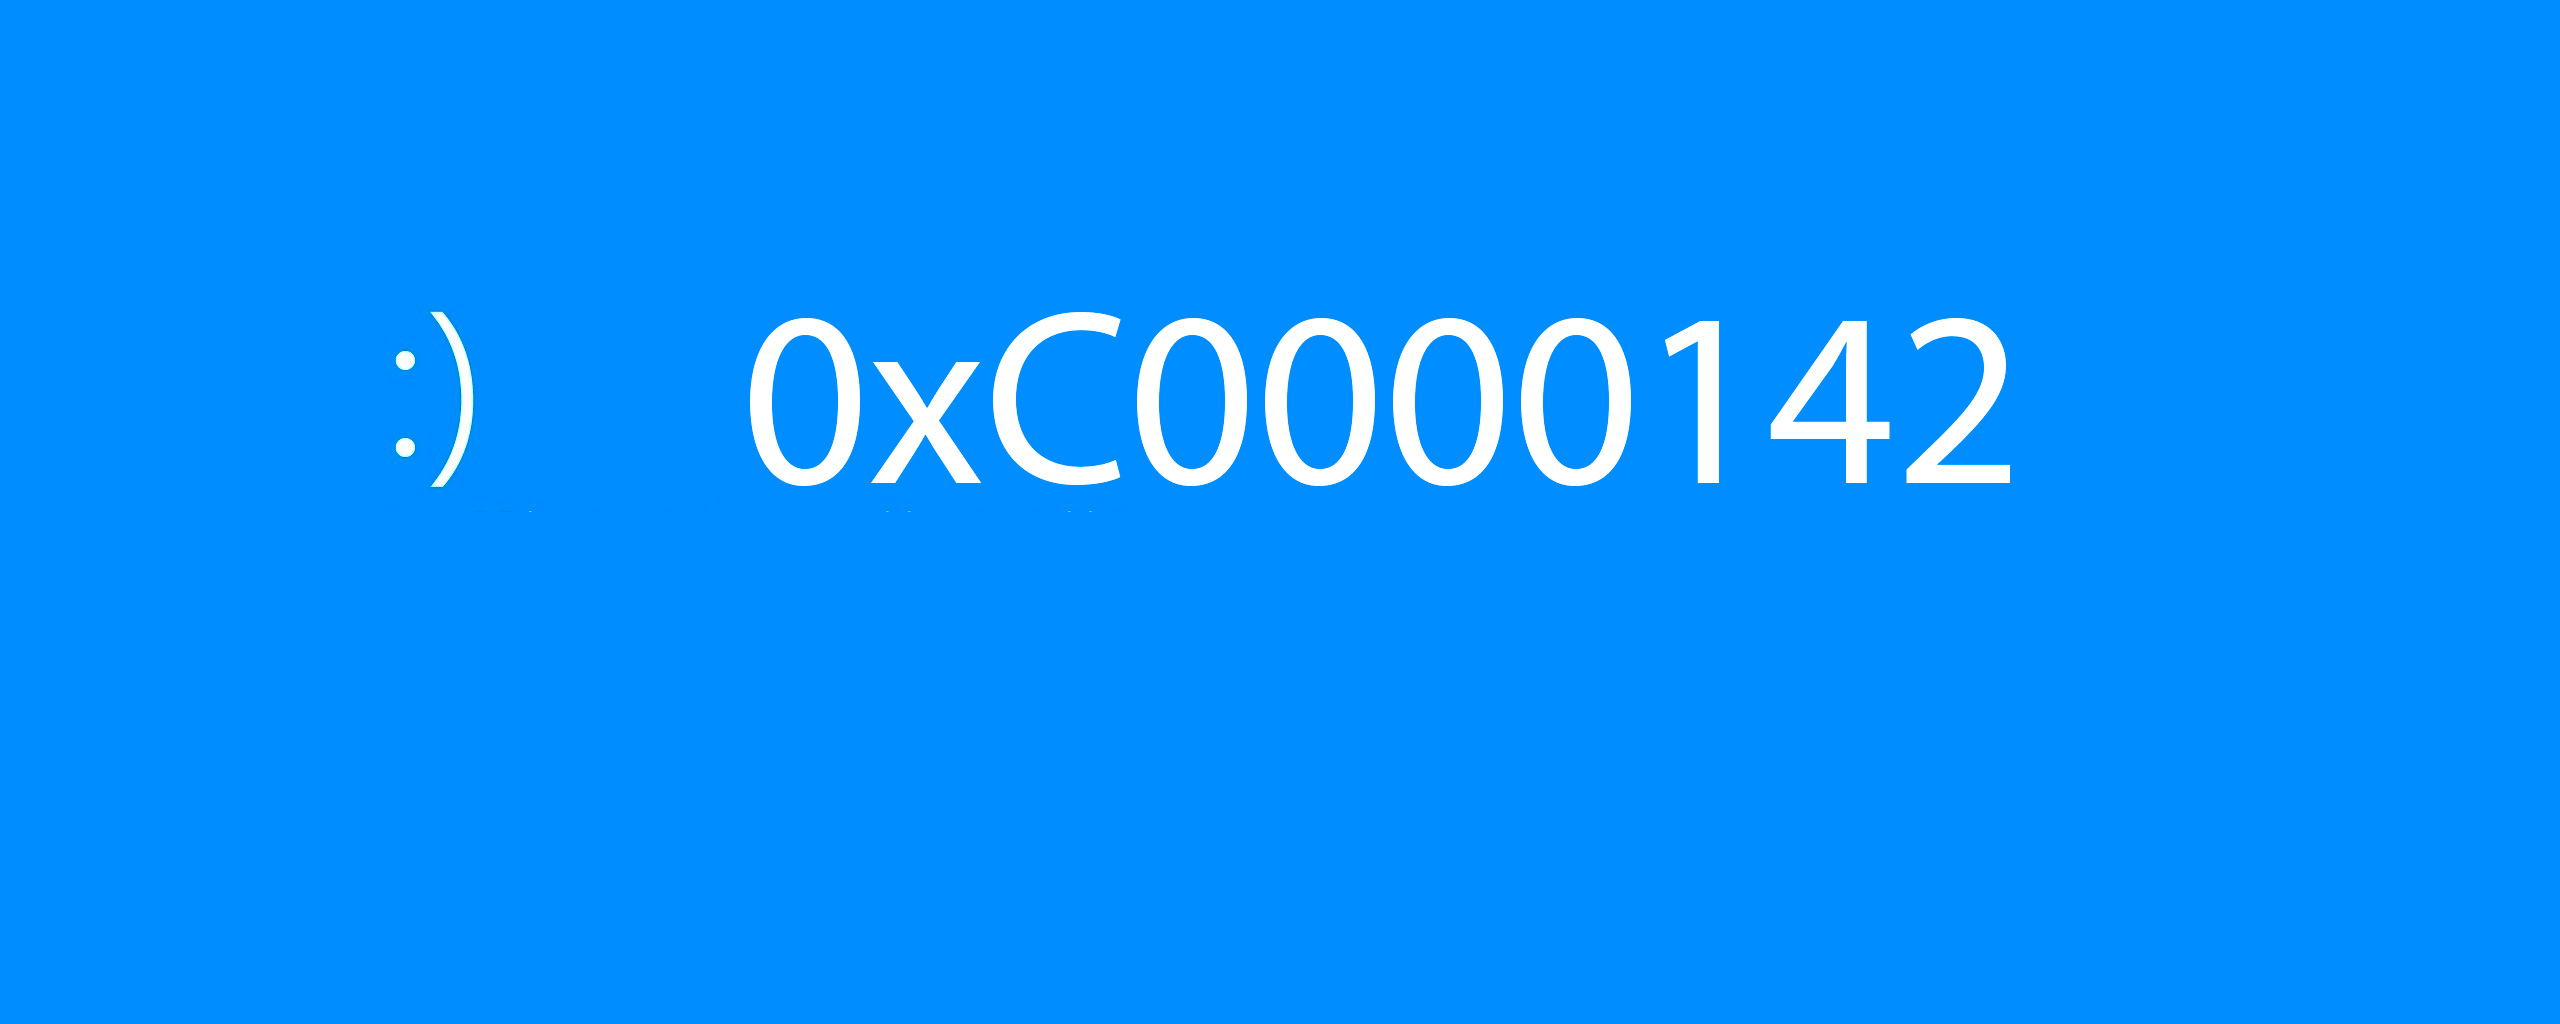 ошибка при запуске приложения 0xc0000142 для выхода из приложения нажмите кнопку ок гта 5 фото 8